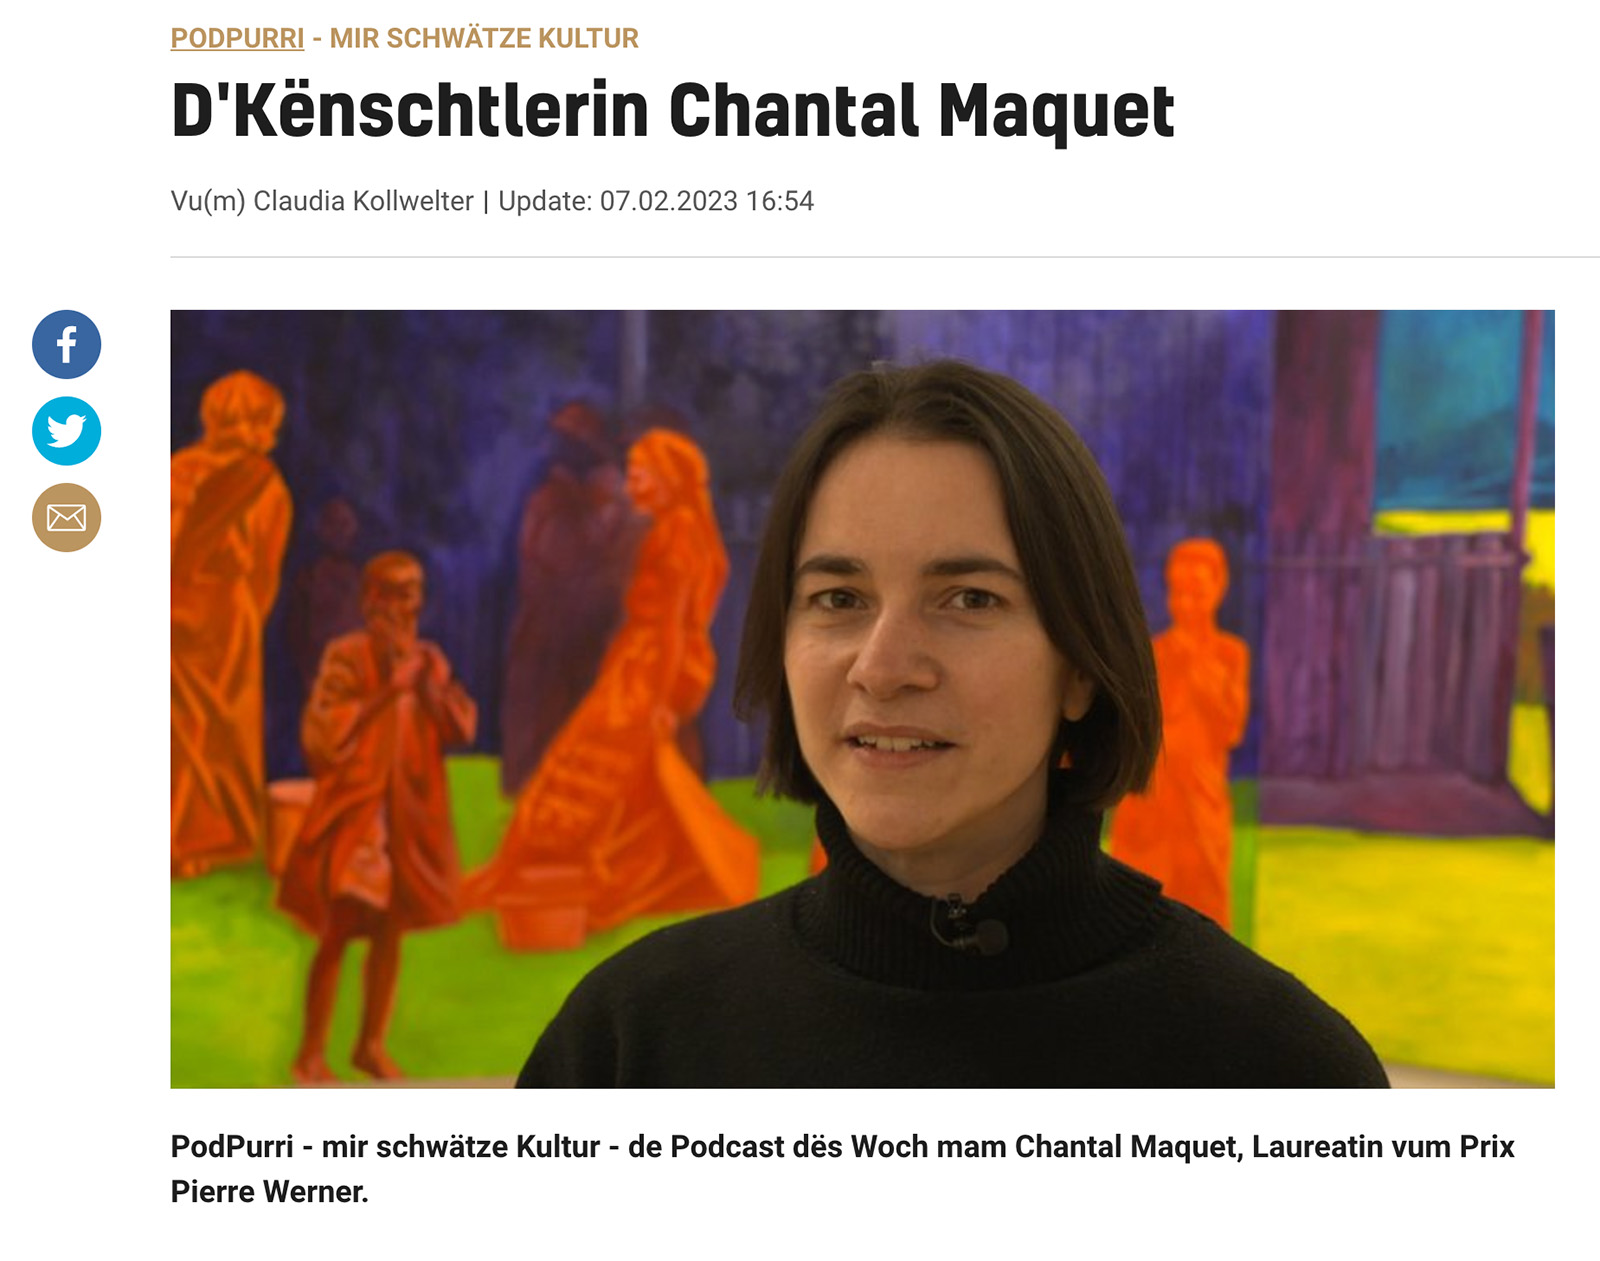 News of Reuter Bausch Art Gallery PodPurri - mir schwätze Kultur